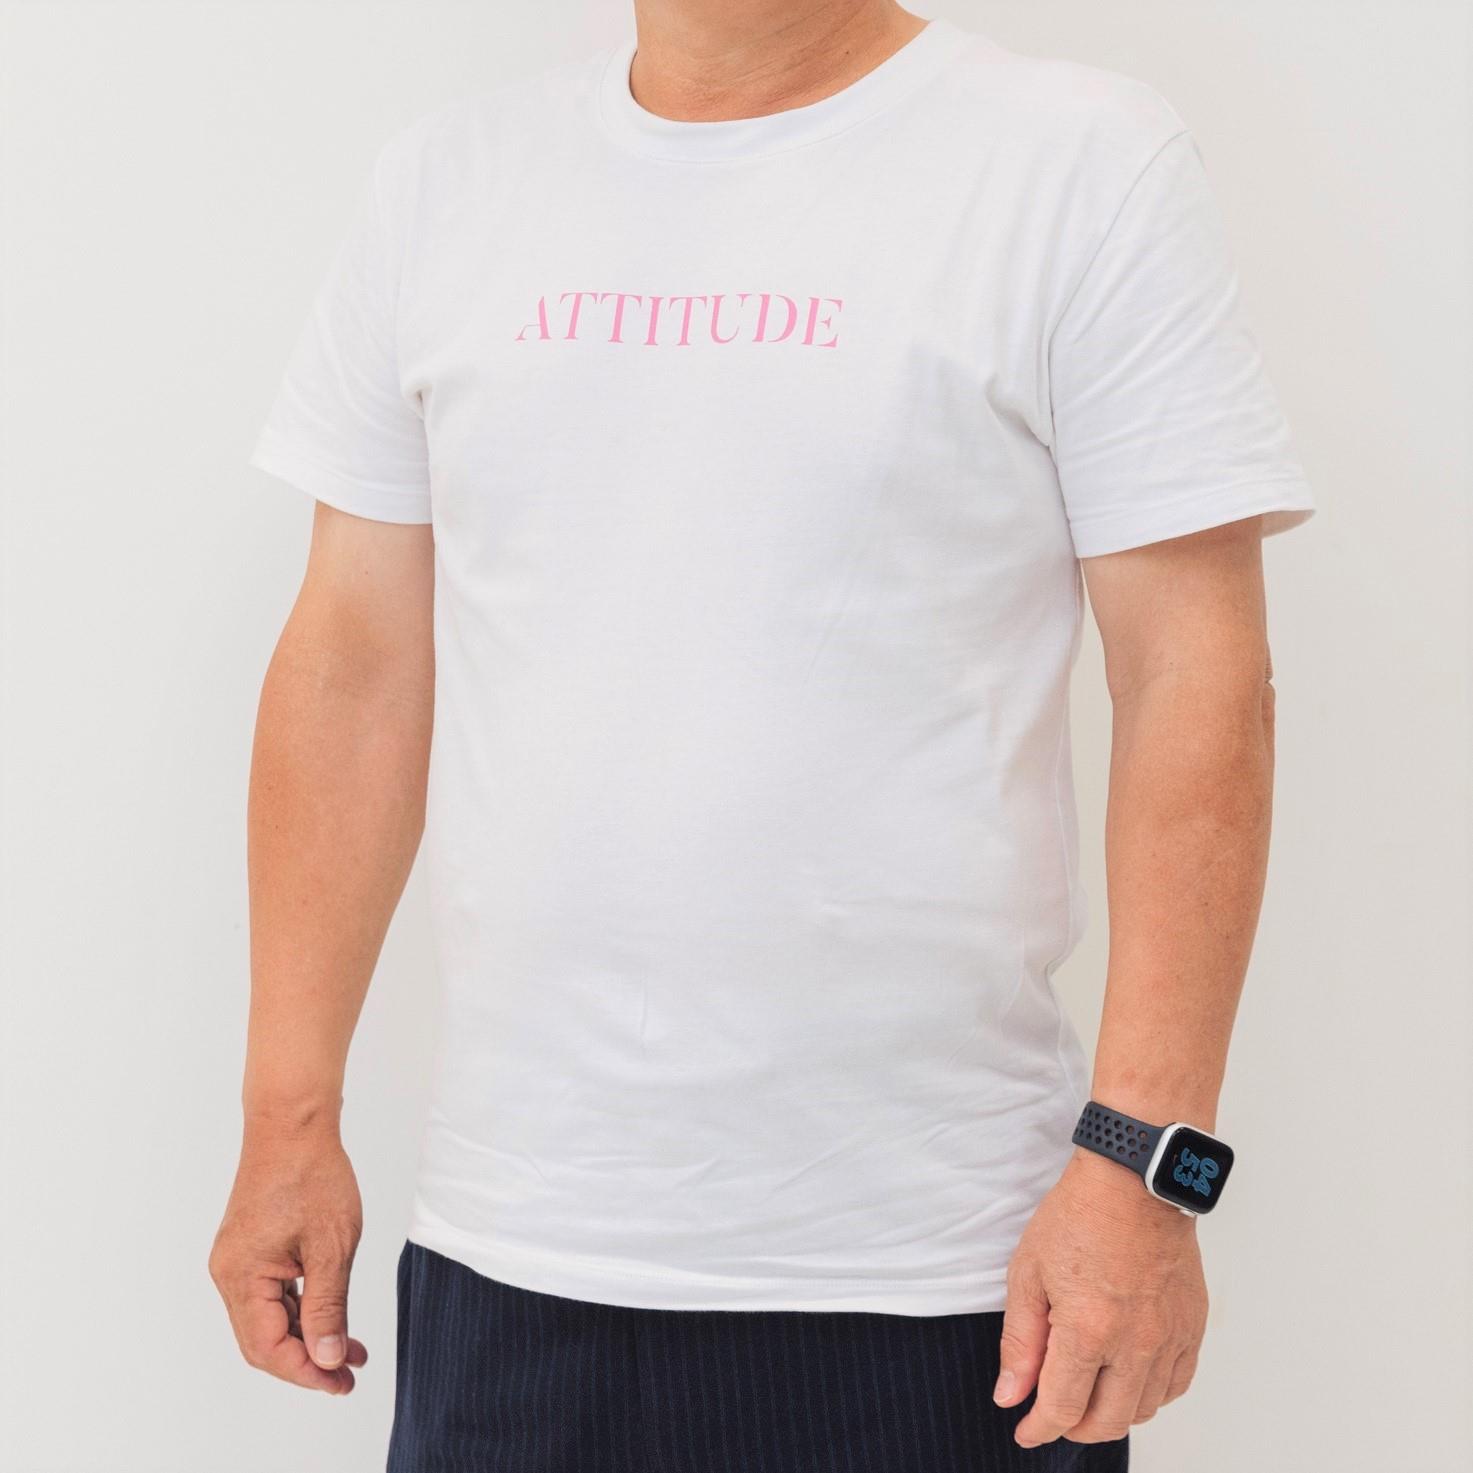 ★買一送一★ATTi TUDE-品牌LOGO設計短袖上衣 白色 (中性版型 ) 短T T恤 AT-MT2205